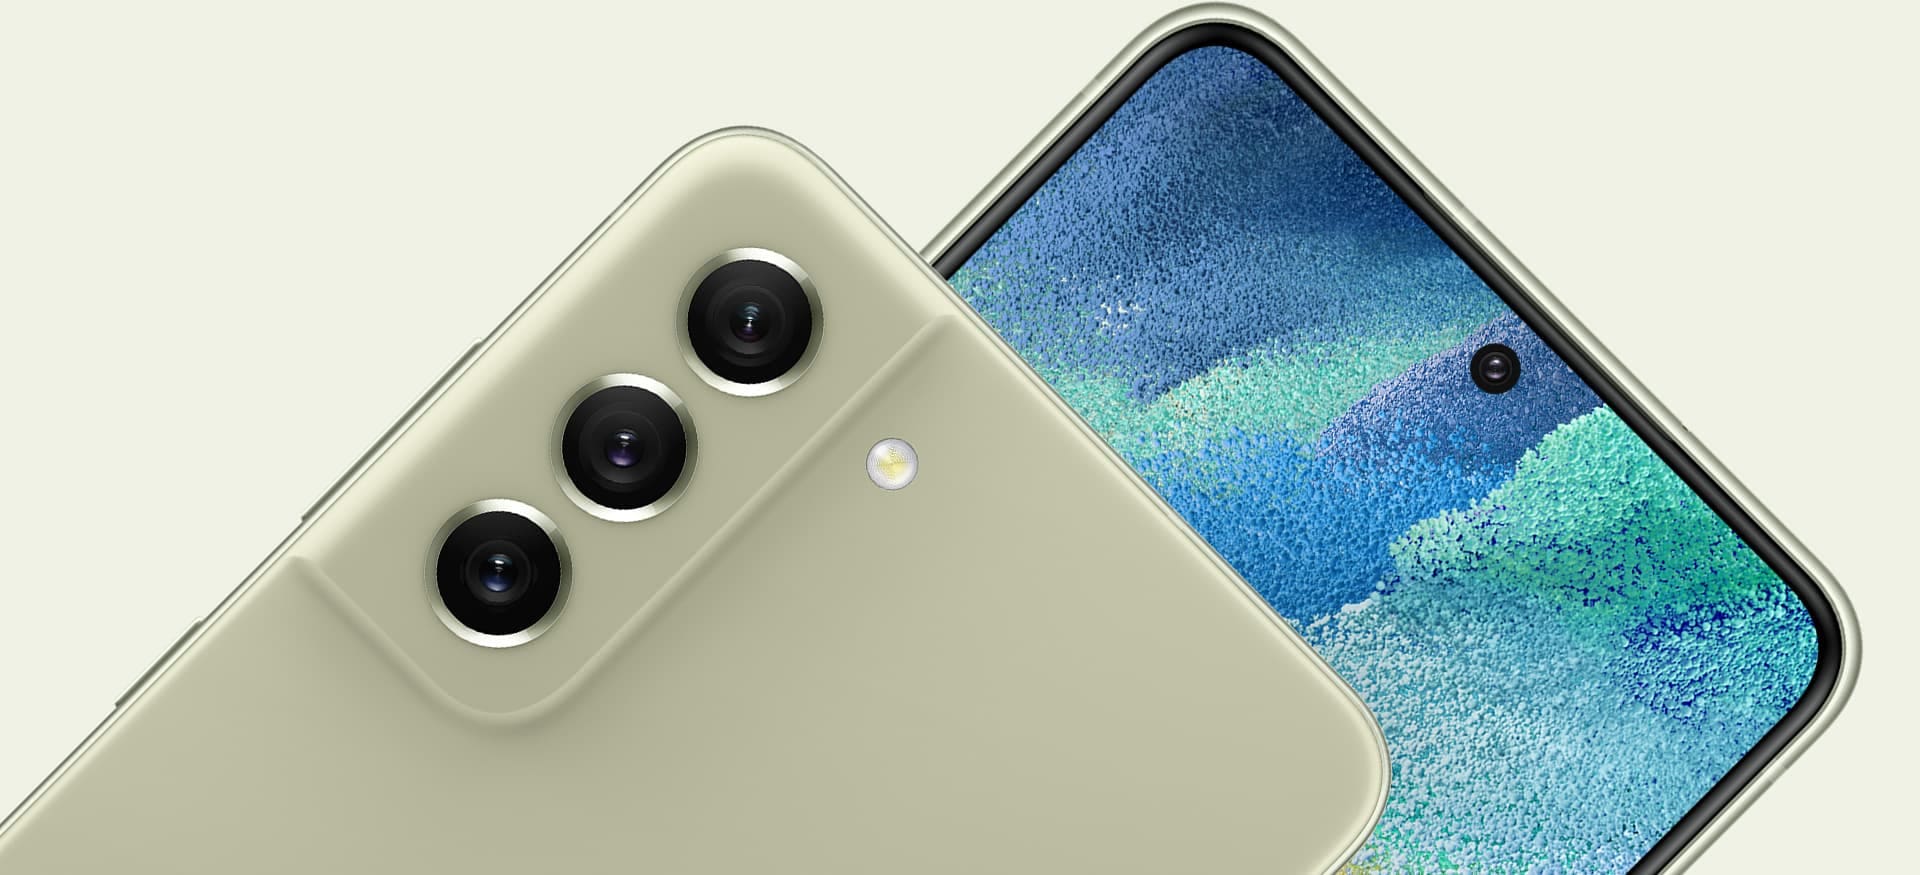 Dos teléfonos Galaxy S21 FE 5G. Uno visto desde atrás, con foco en la cámara posterior mientras se encuentra apoyado sobre el otro teléfono visto desde el frente, con foco en la cámara frontal.